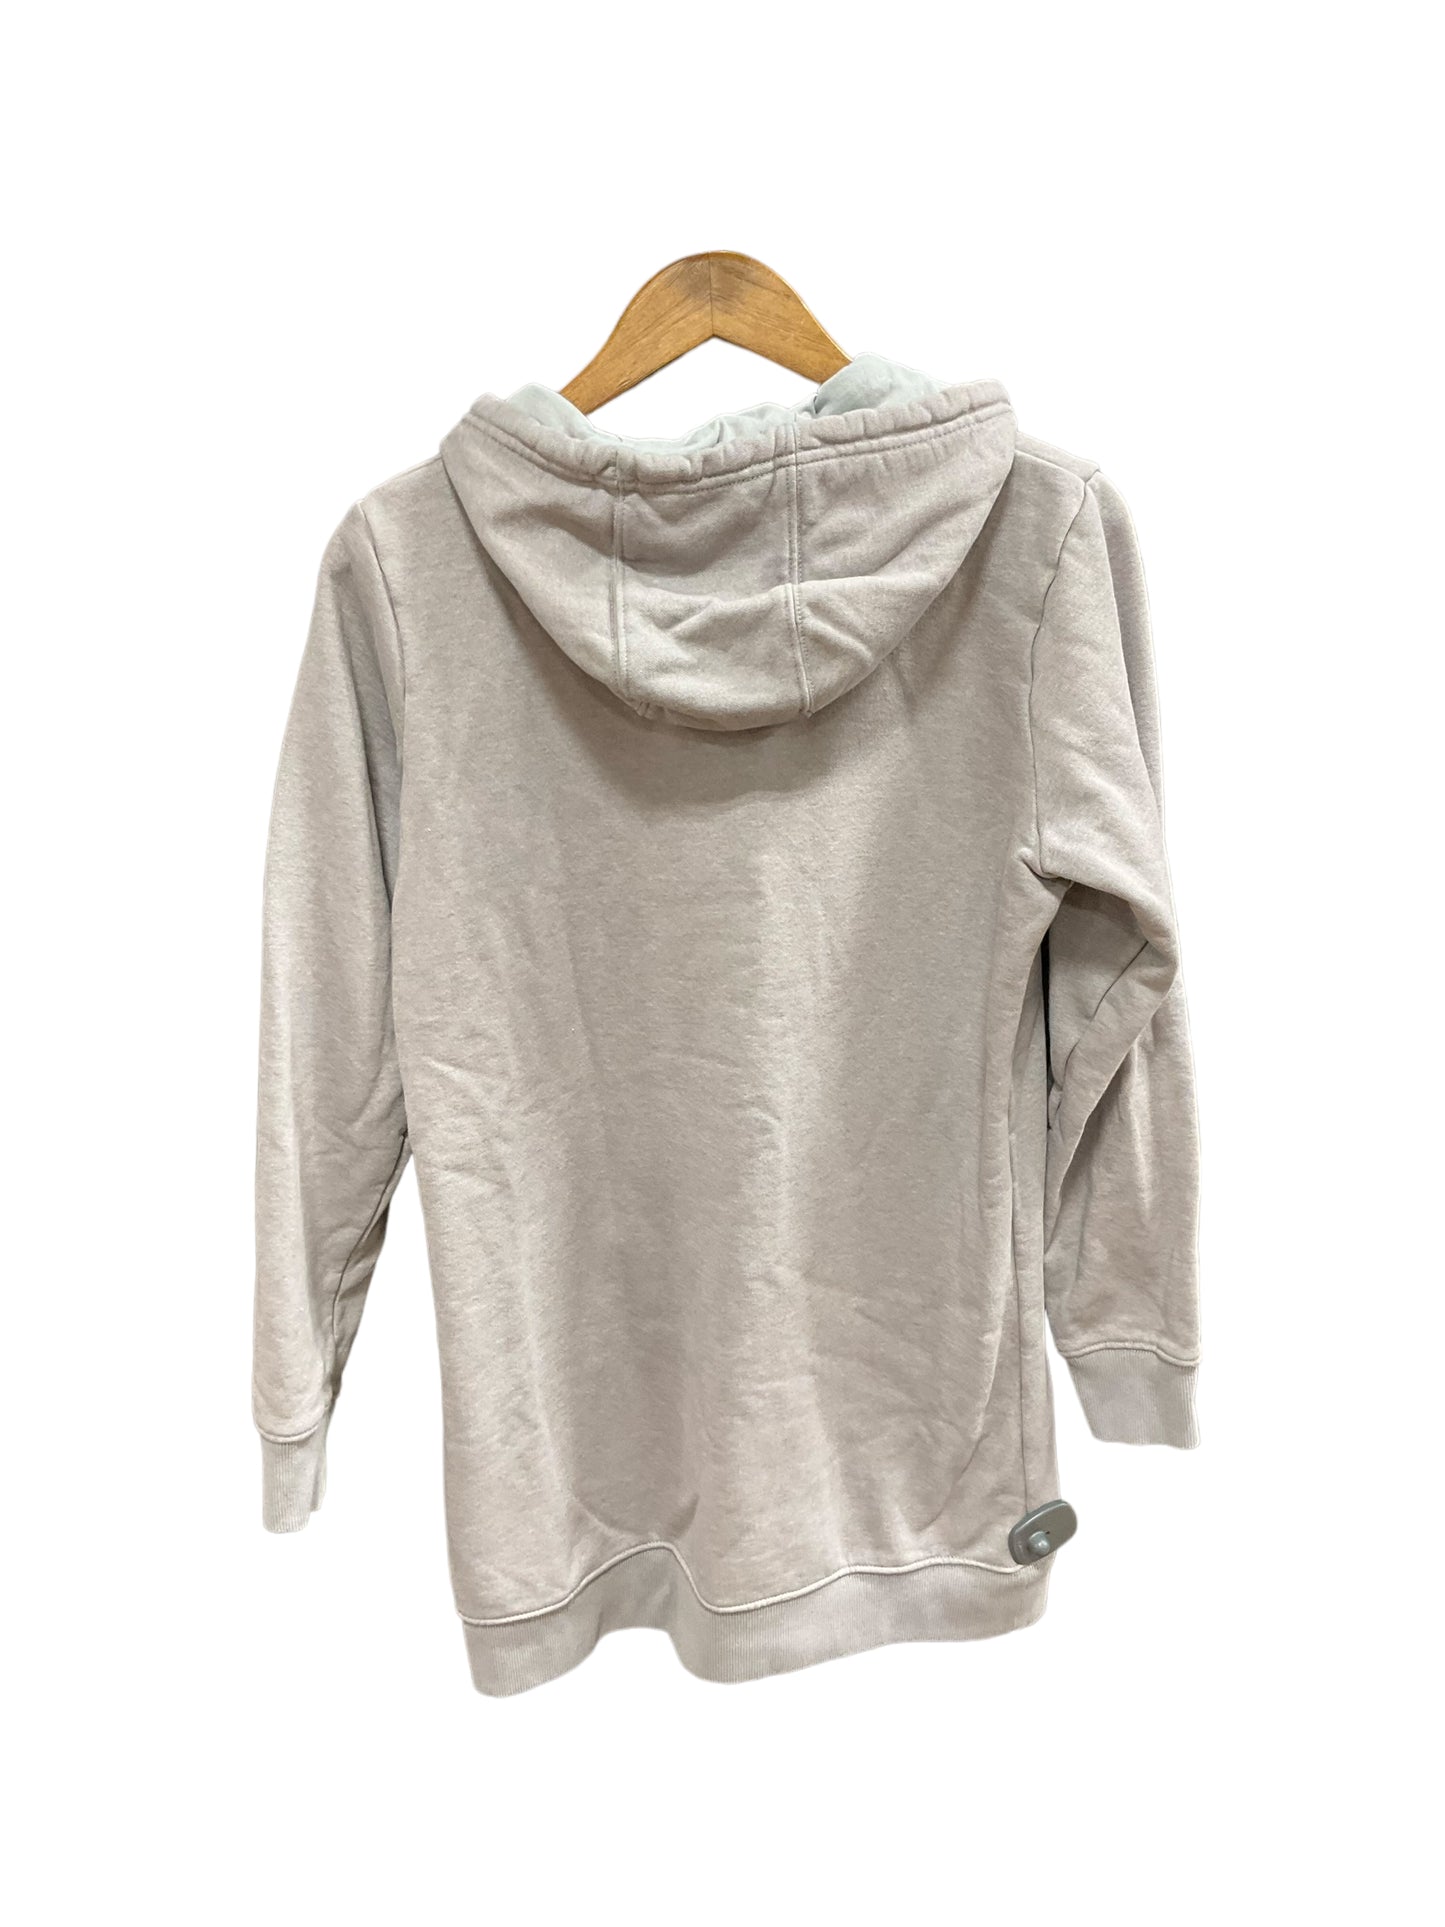 Sweatshirt Hoodie By Columbia  Size: M